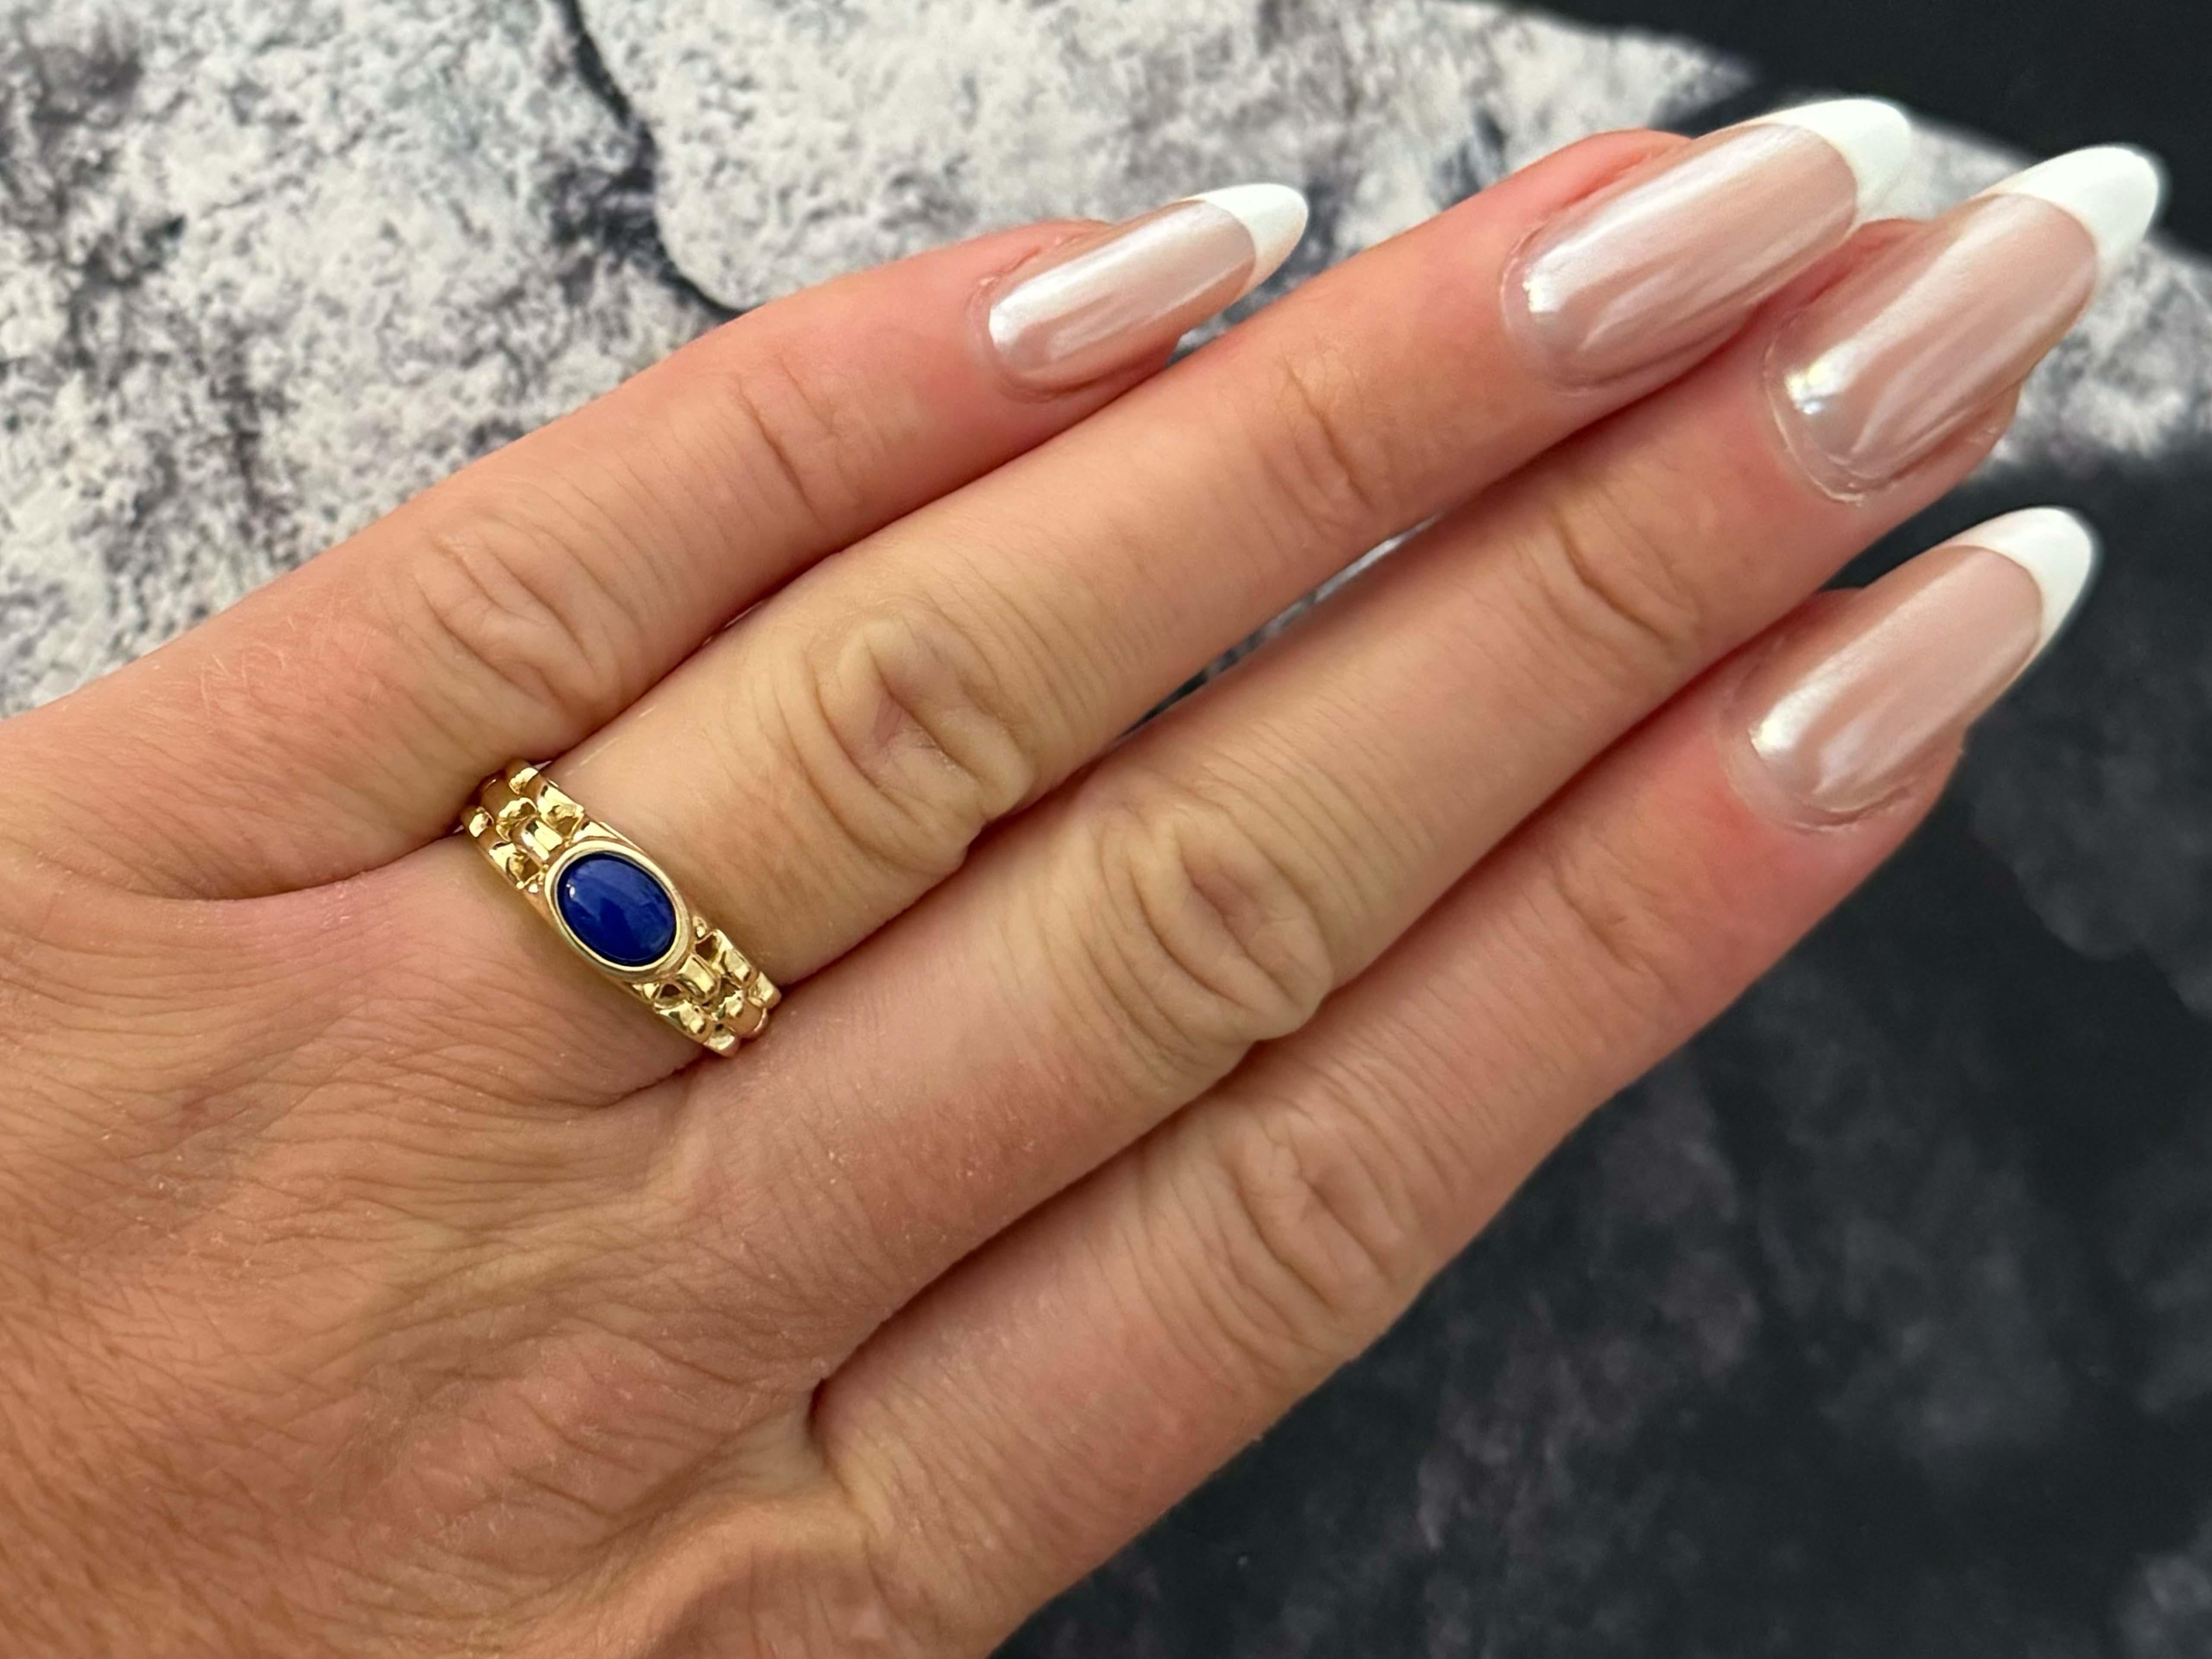 Spécifications de l'anneau :

Métal : Or jaune 14k

Poids total : 2.5 grammes

Pierre précieuse : Lapis Lazuli

Dimensions du lapis-lazuli : ~6.6 mm x  4.9 mm x 2.5 mm

Taille de l'anneau : 6.75 (redimensionnable)

Estampillé : 